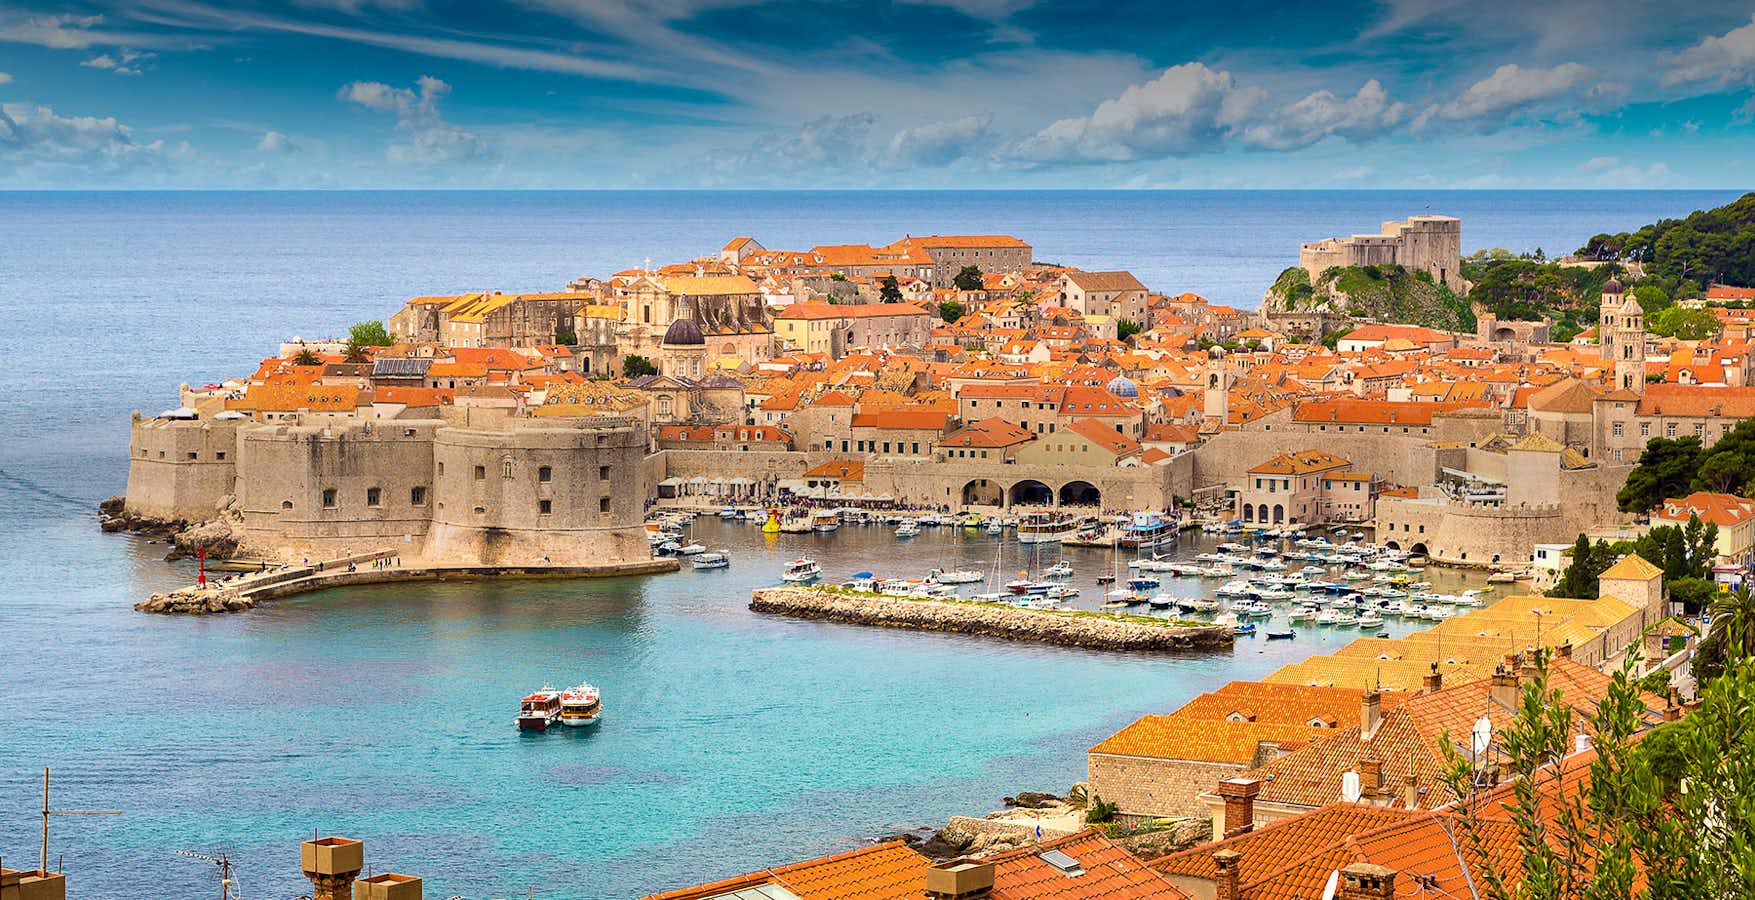 tourhub | Shearings | Highlights of Croatia and Slovenia – Dubrovnik and the Dalmatian Coast 